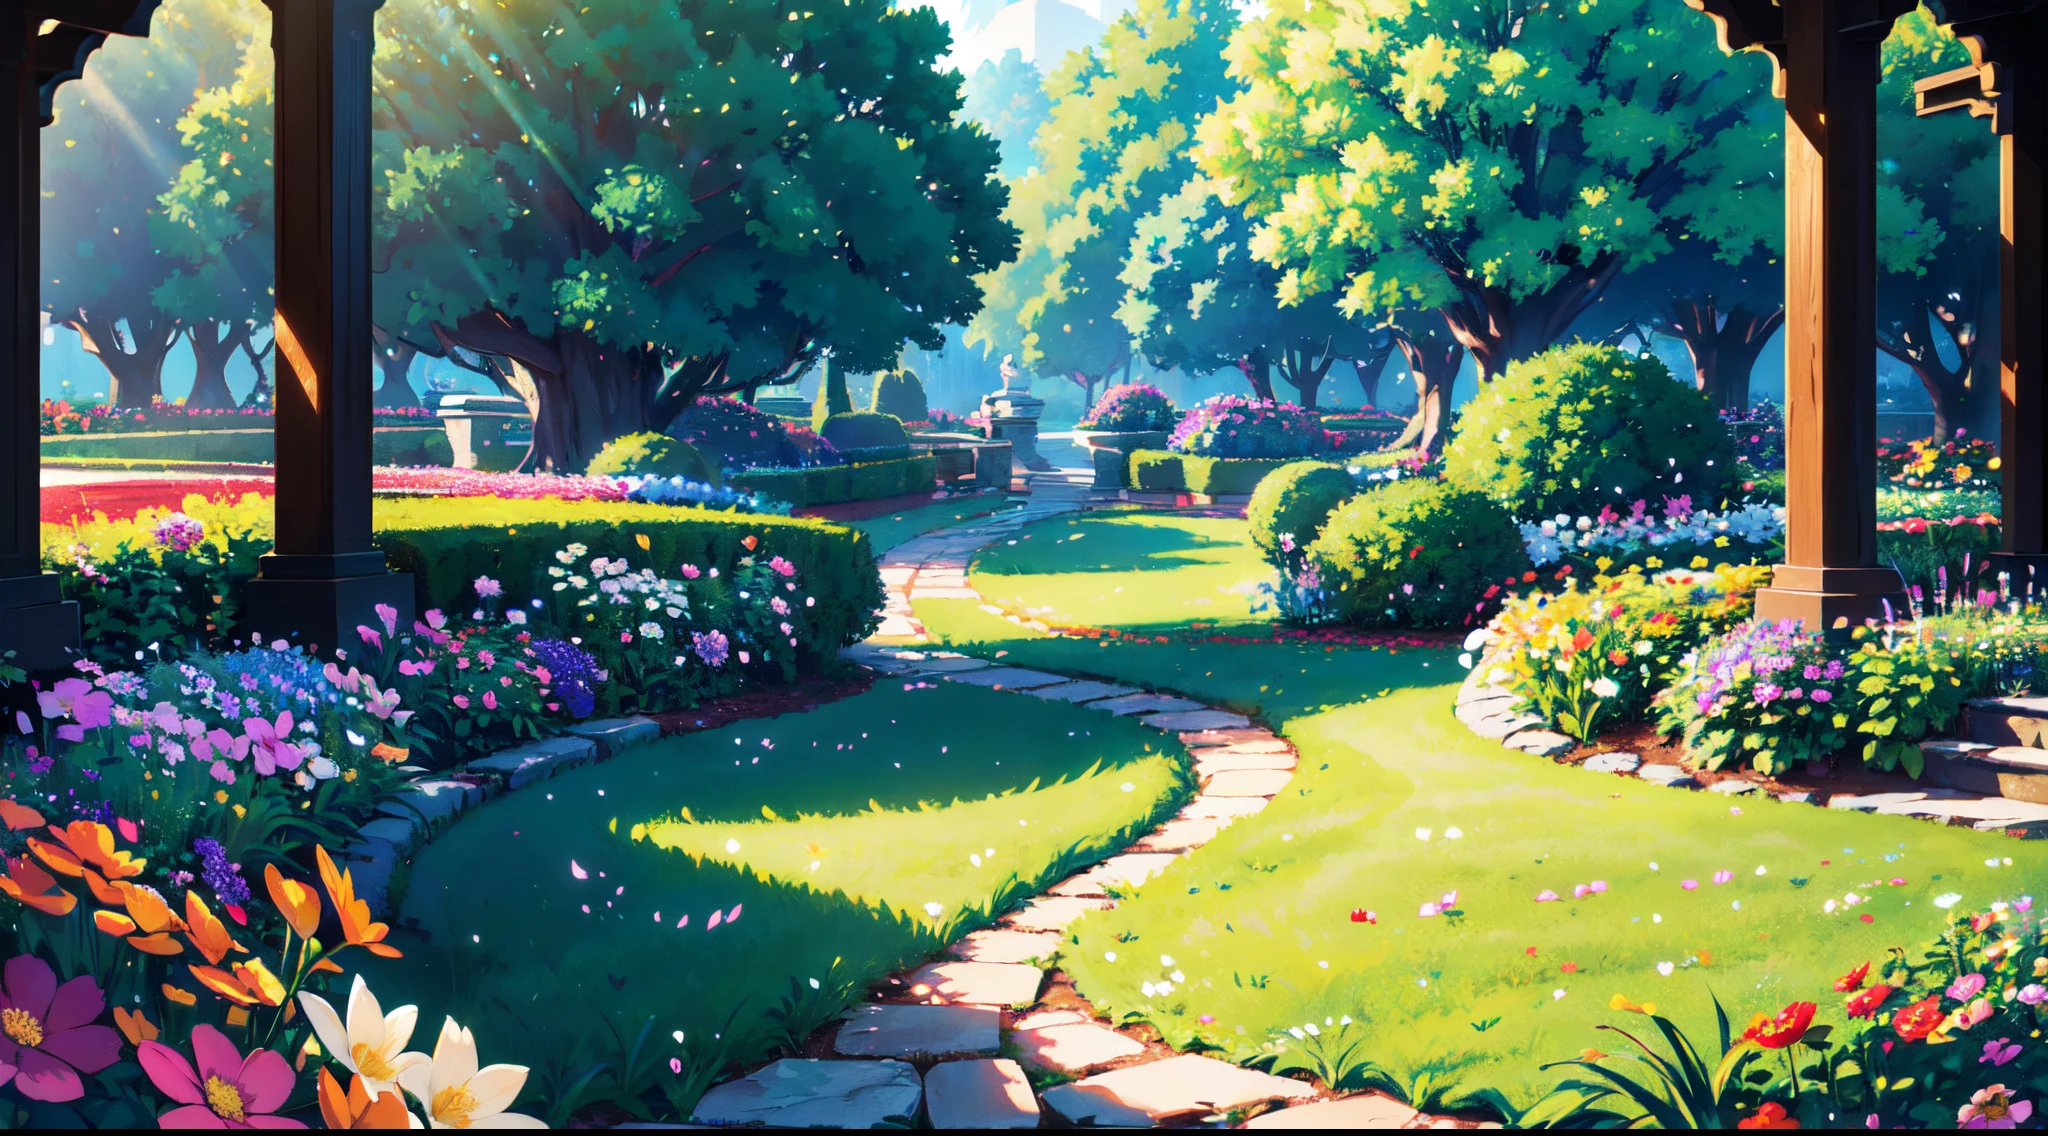 (매우 상세한 CG Unity 8k 벽지, 걸작, 최고의 품질, 매우 상세한), (더 나은 조명, 더 나은 그림자, 유난히 섬세하고 아름다운), 꽃밭, 무성한 녹지, 태양 빛, 흐르는, 피사계 심도, 따뜻하고 친근한 분위기.